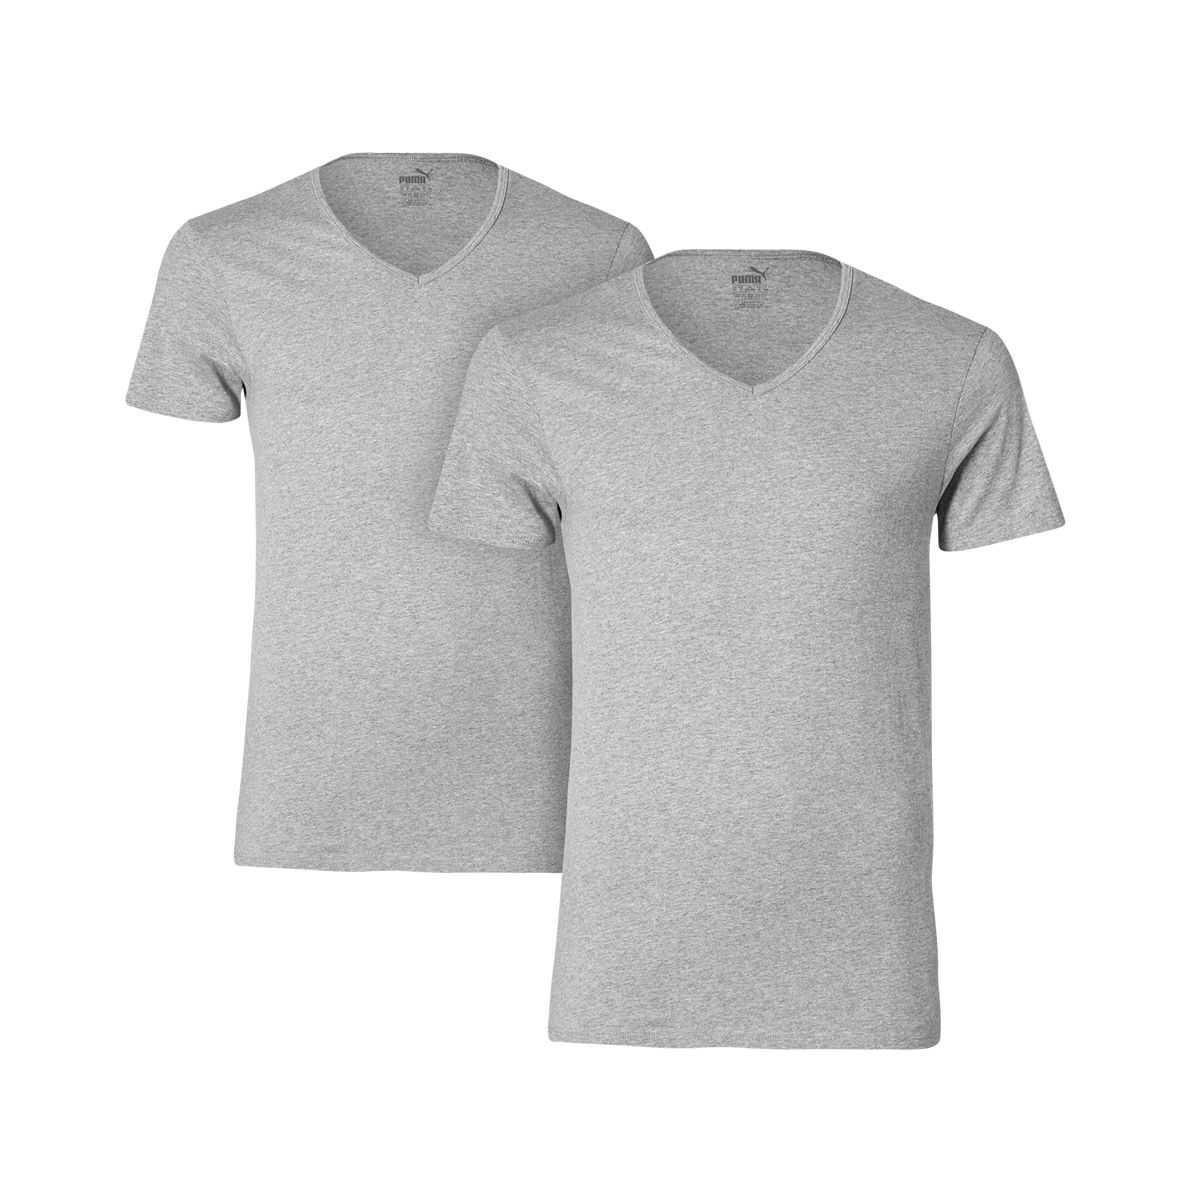 2 er Pack Puma Basic V Neck T-Shirt Men Herren Unterhemd V-Ausschnitt